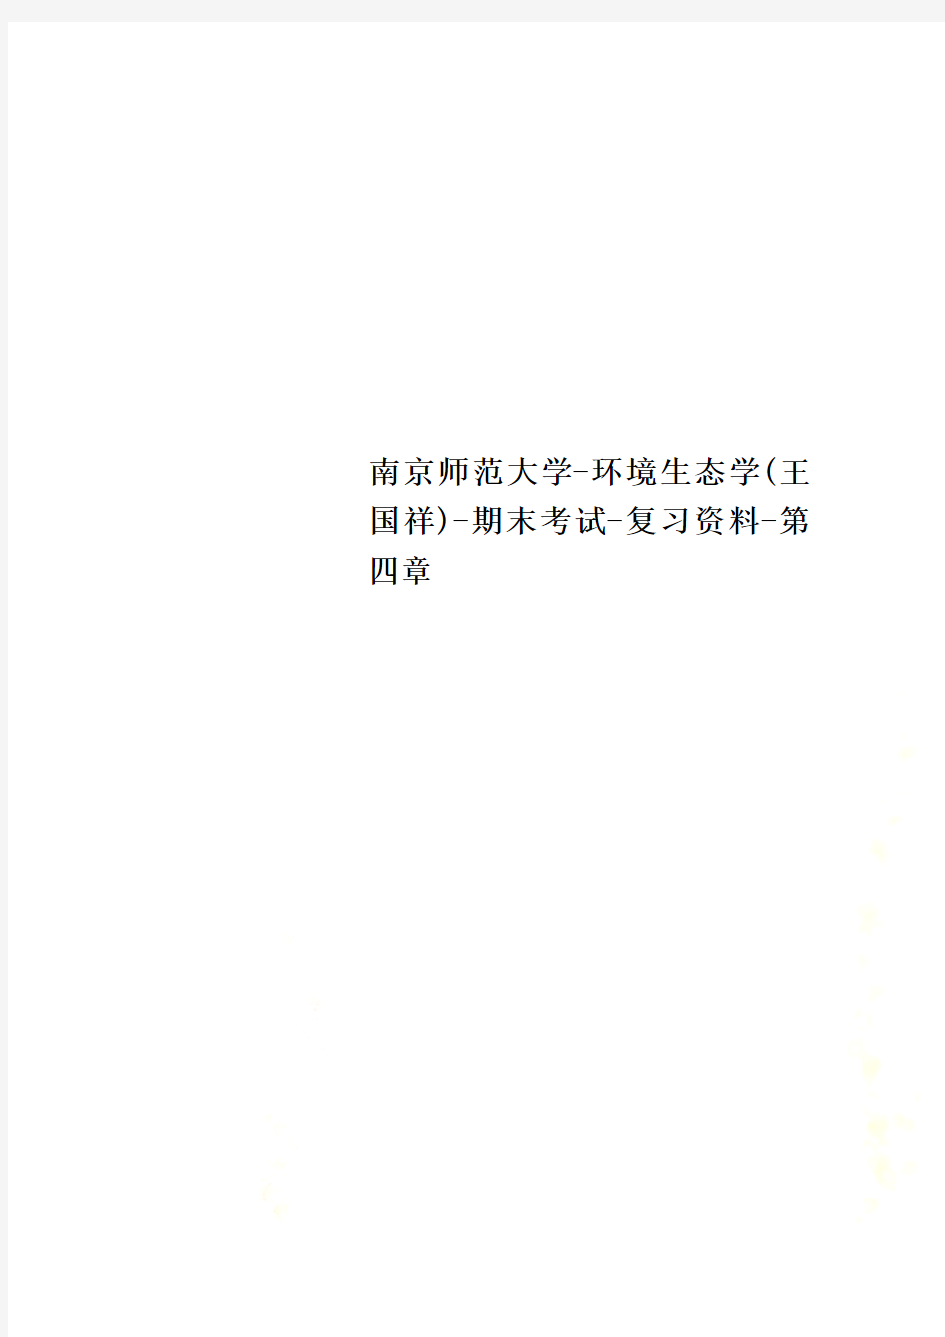 南京师范大学-环境生态学(王国祥)-期末考试-复习资料-第四章